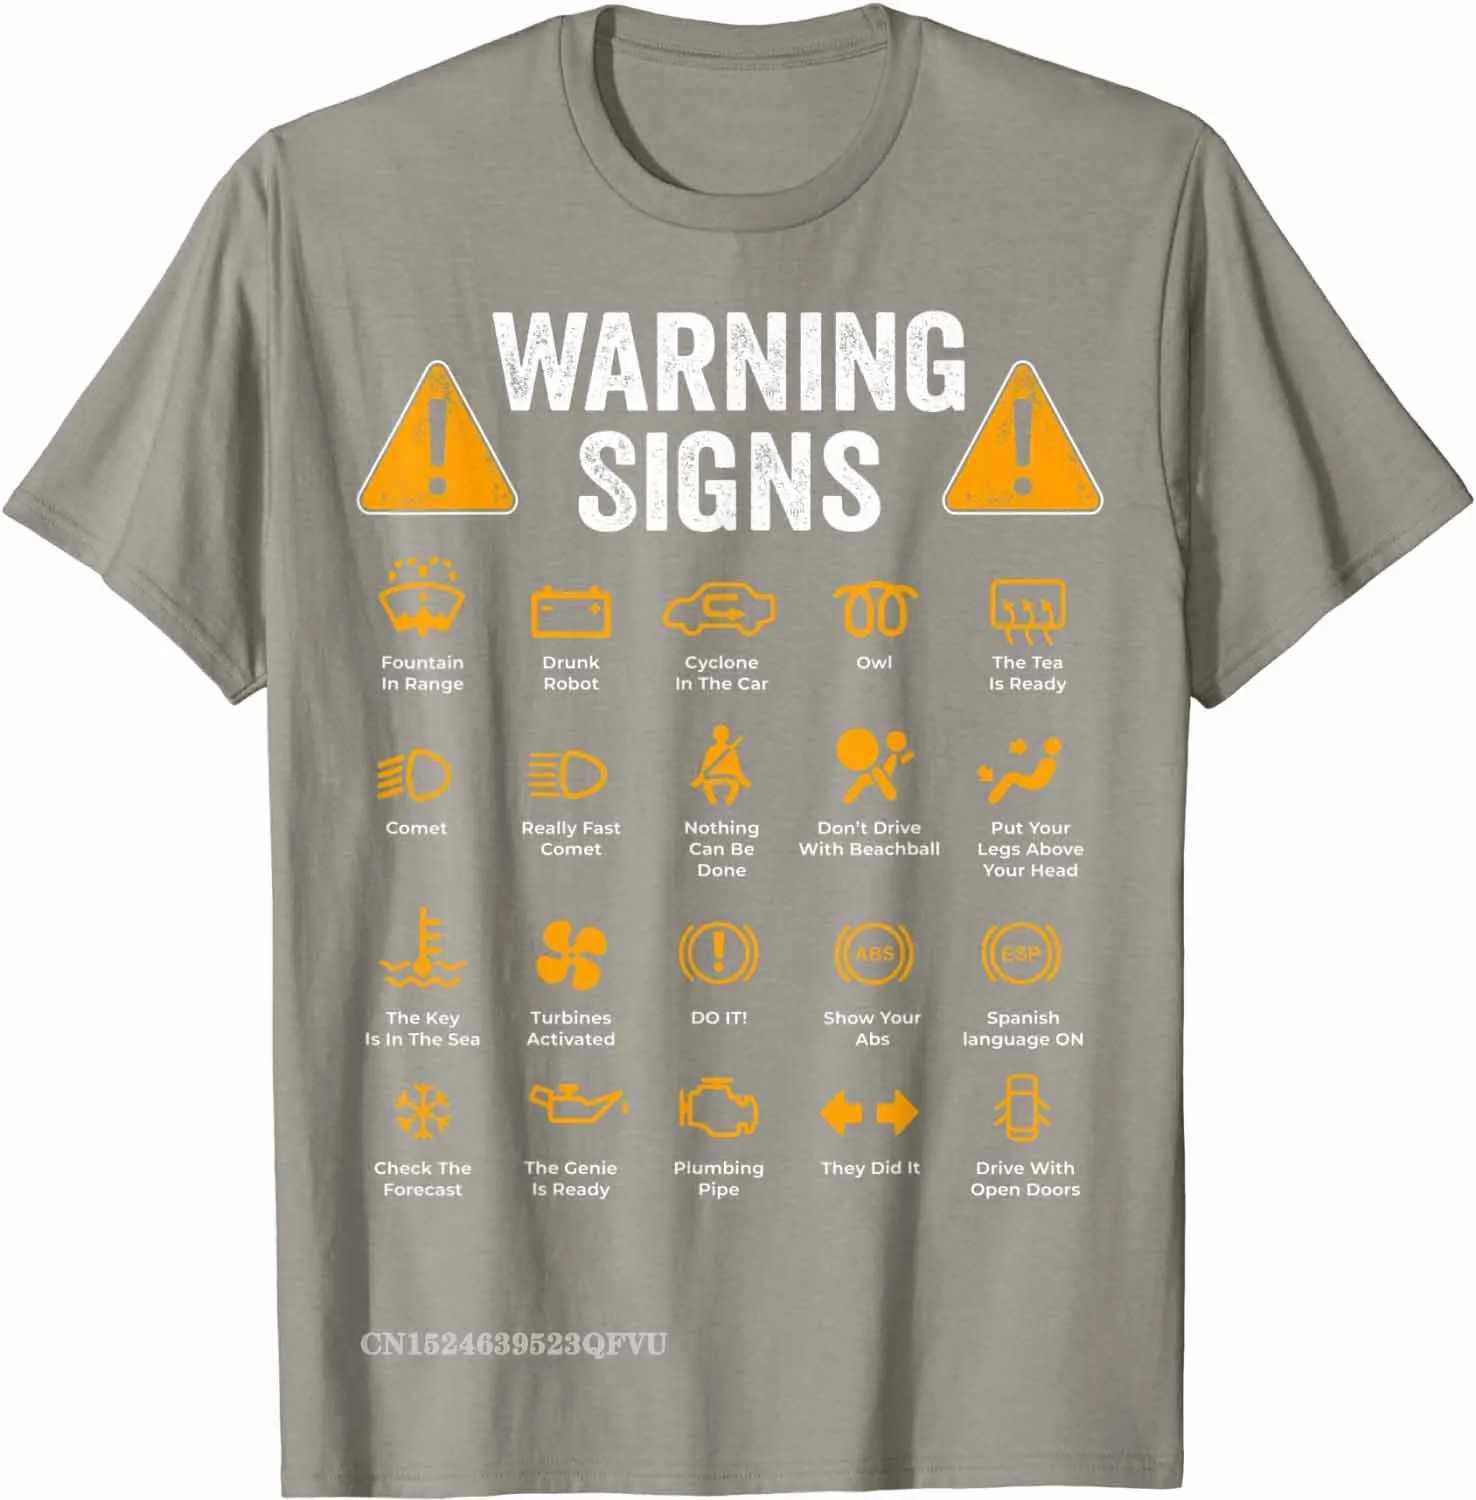 Мужские футболки Забавные предупреждающие знаки для вождения Автомеханик Подарок Футболки для водителя Модная рубашка Хлопковые топы Футболки Повседневная хипстерская одежда Удобная